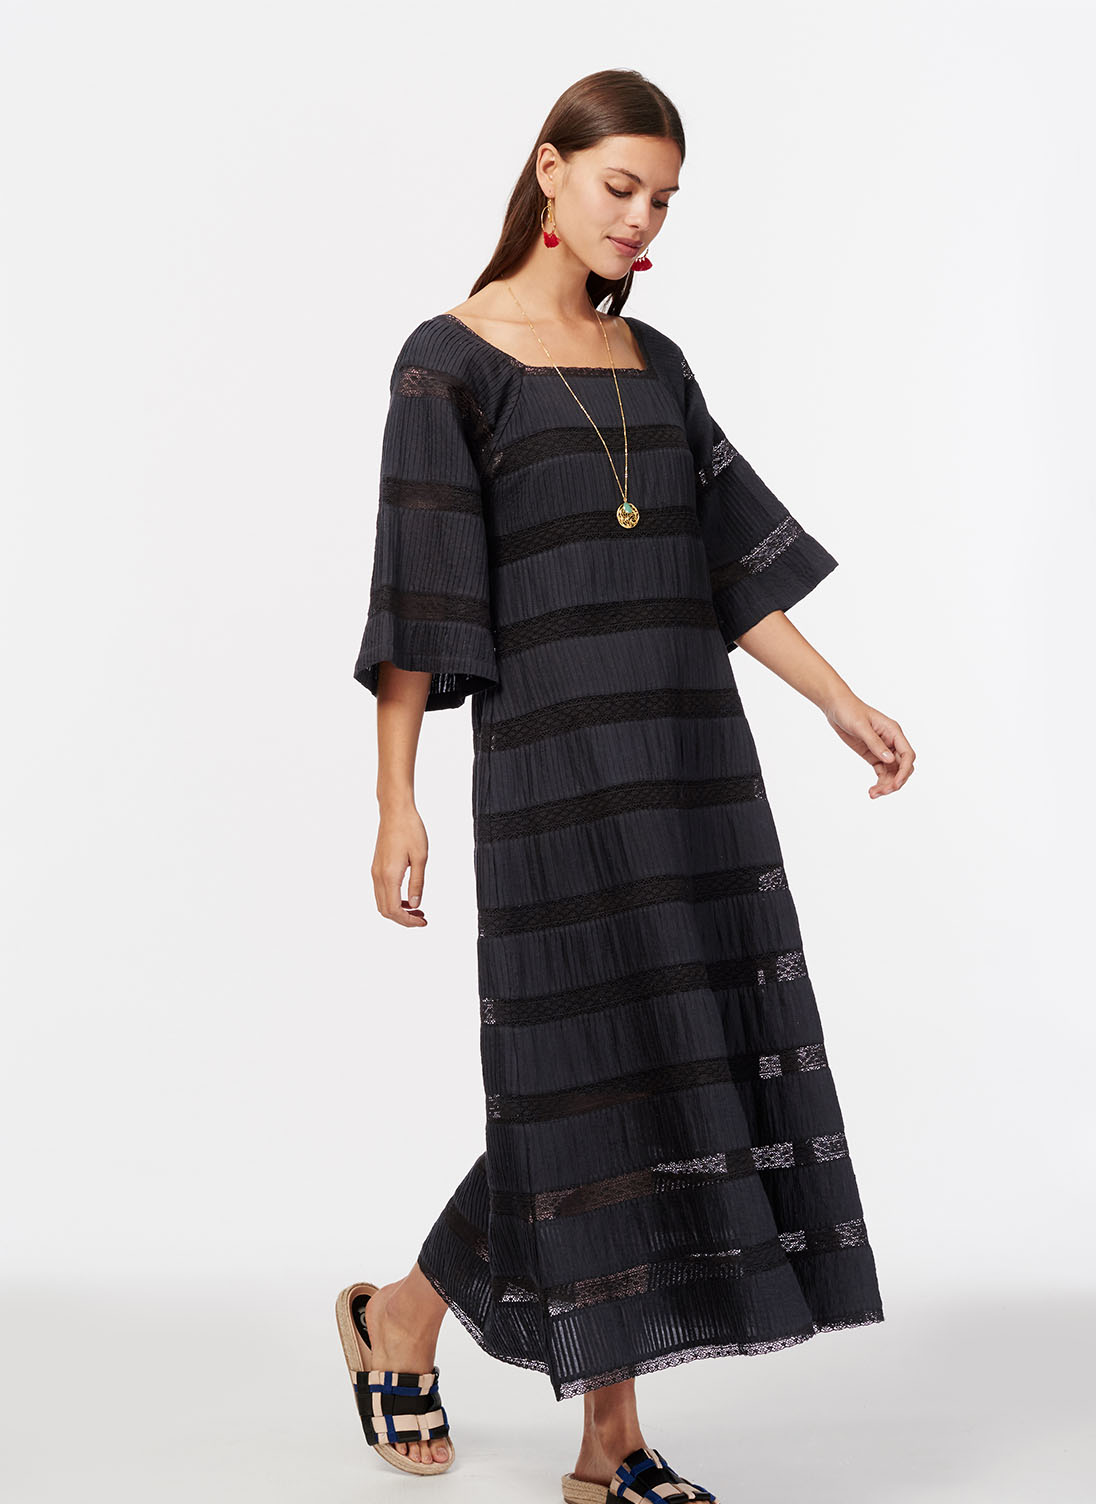 Pintuck & Lace Cotton Dress Summer black